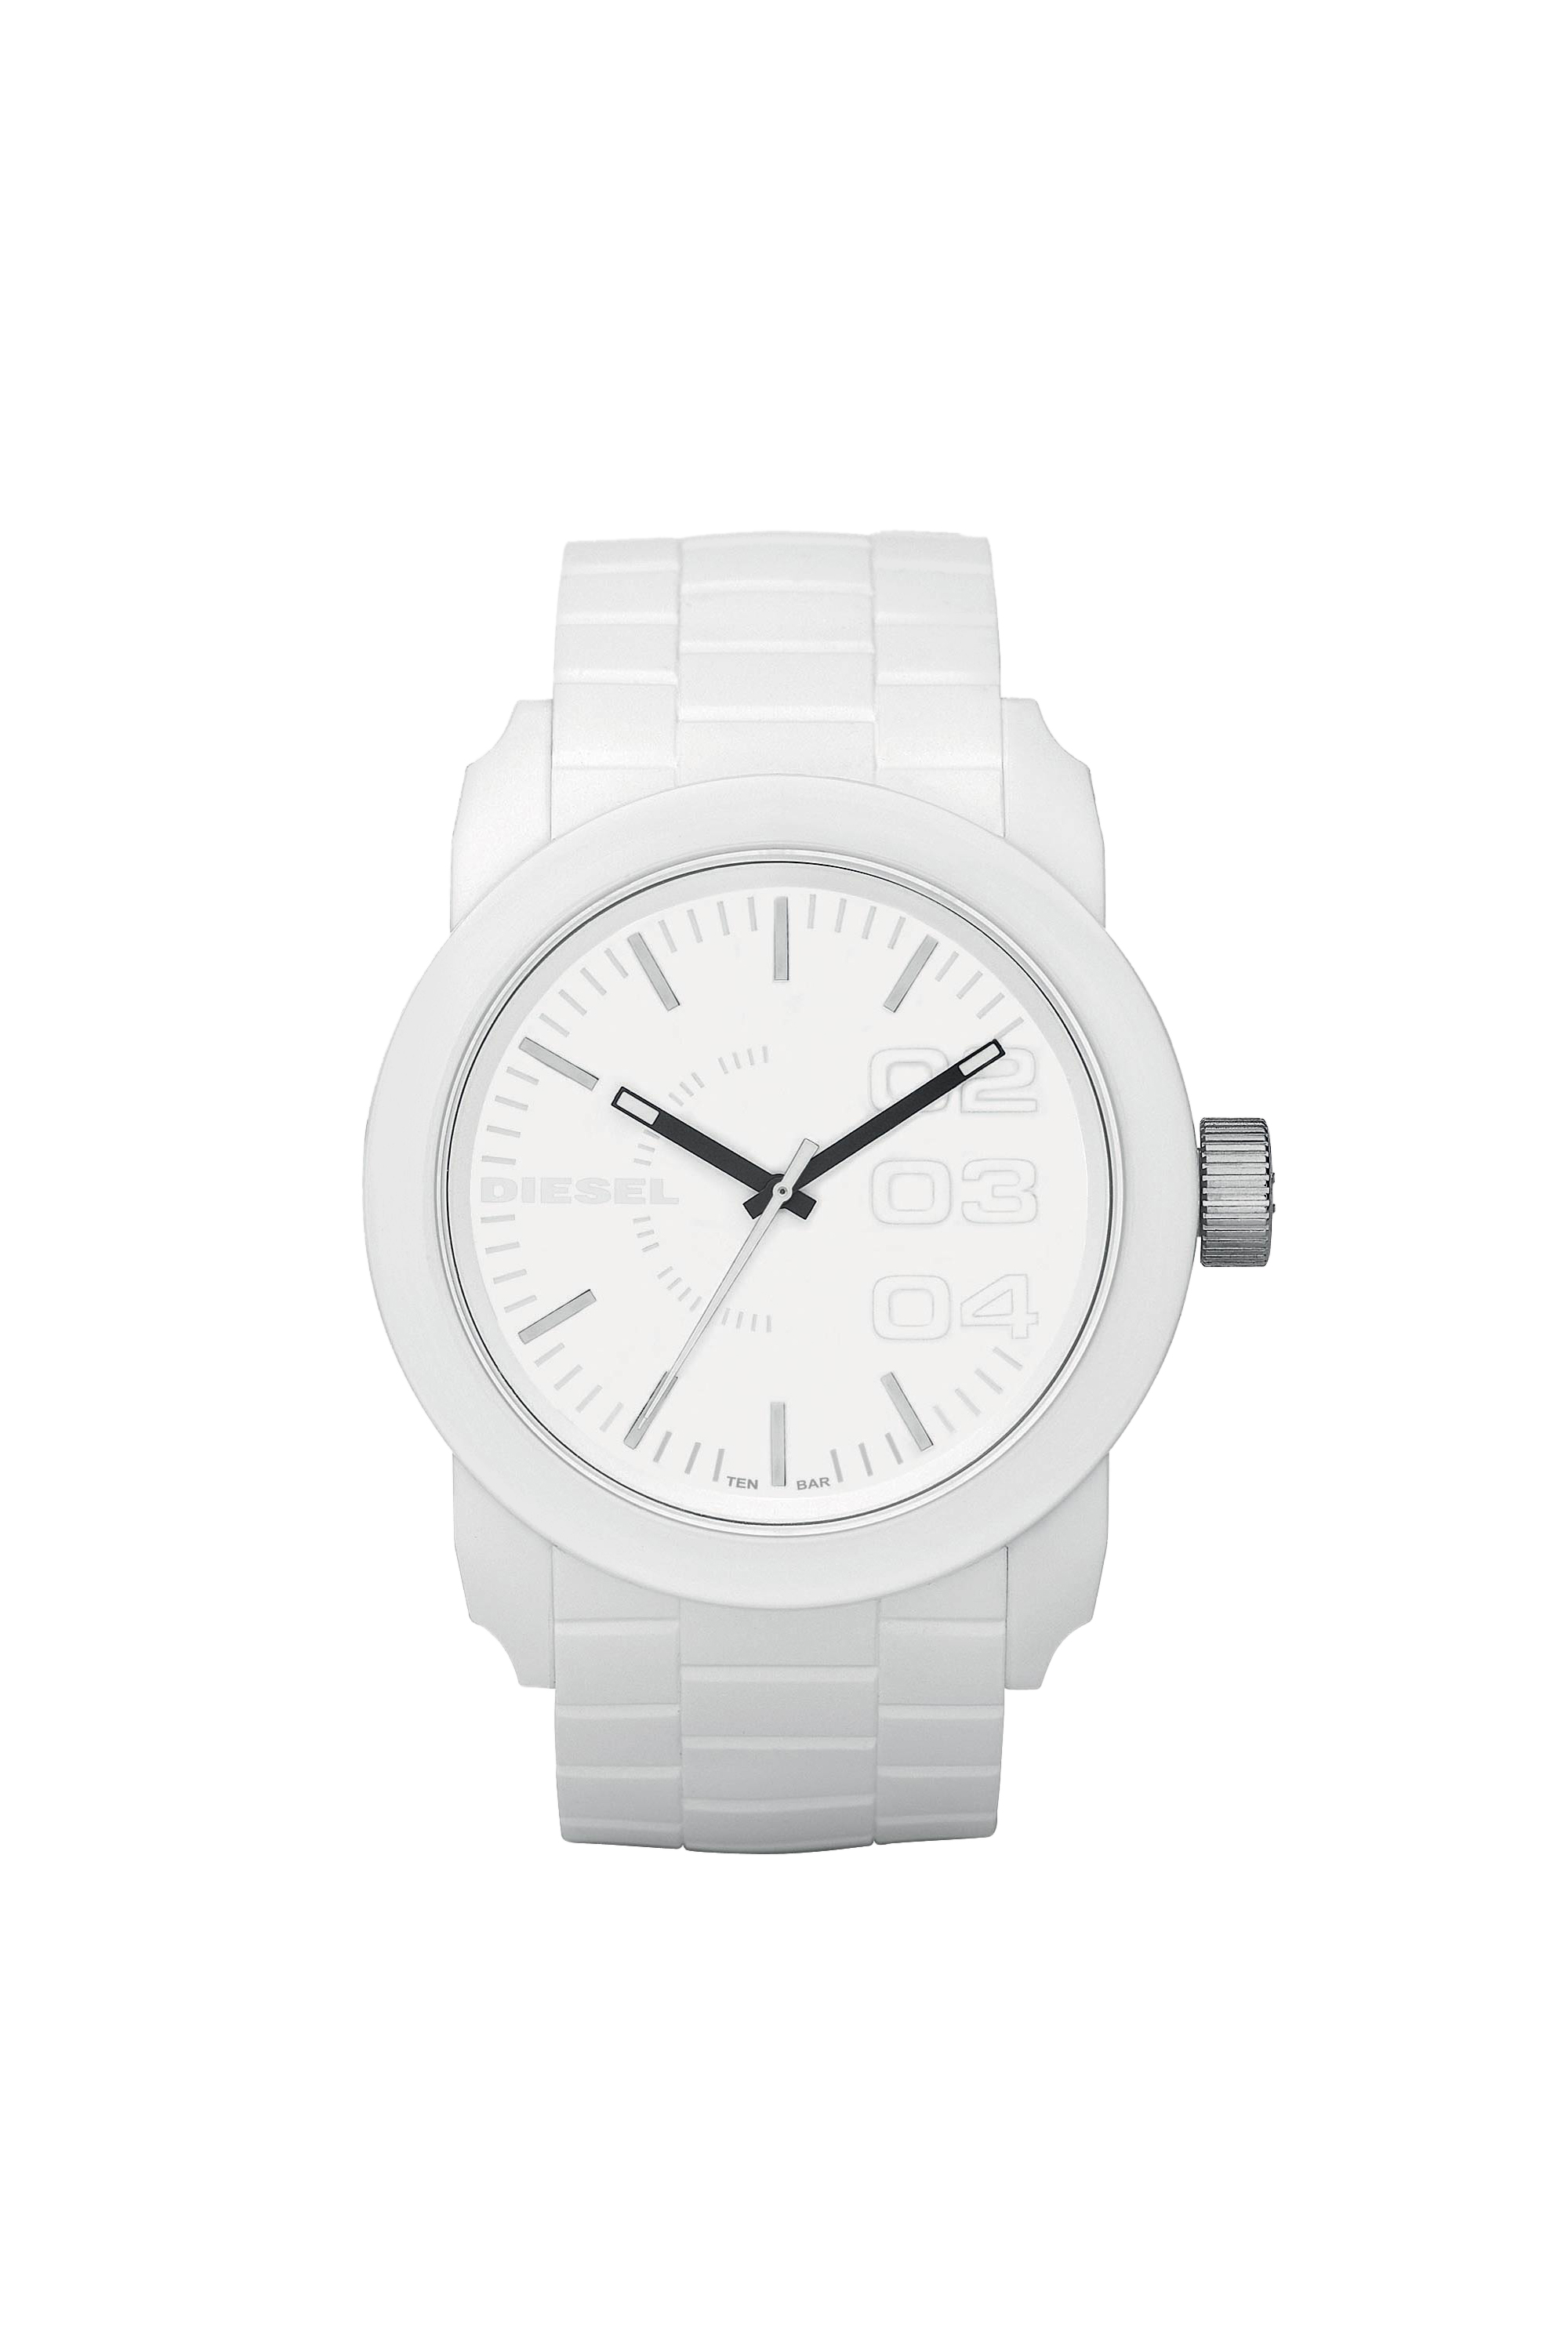 Diesel - Quartz analog watch - Timeframes - Man - White